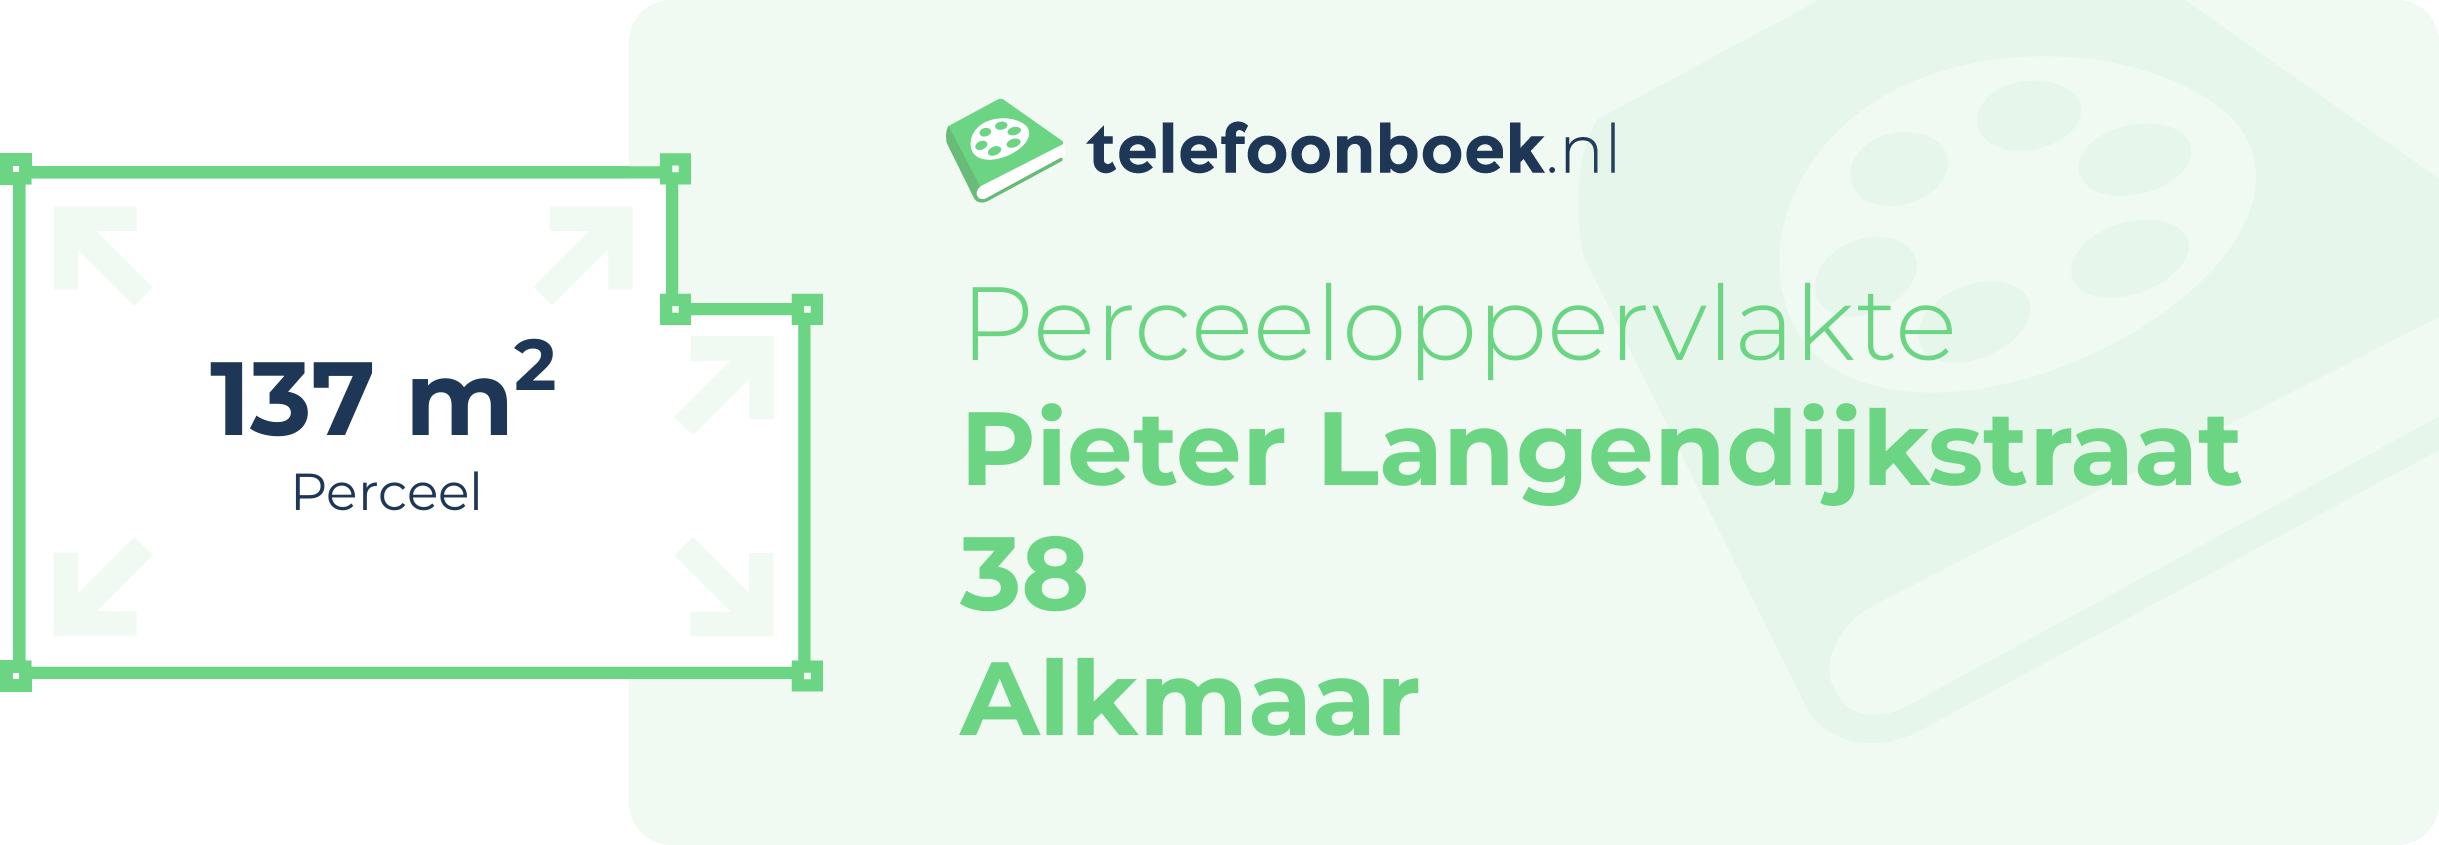 Perceeloppervlakte Pieter Langendijkstraat 38 Alkmaar